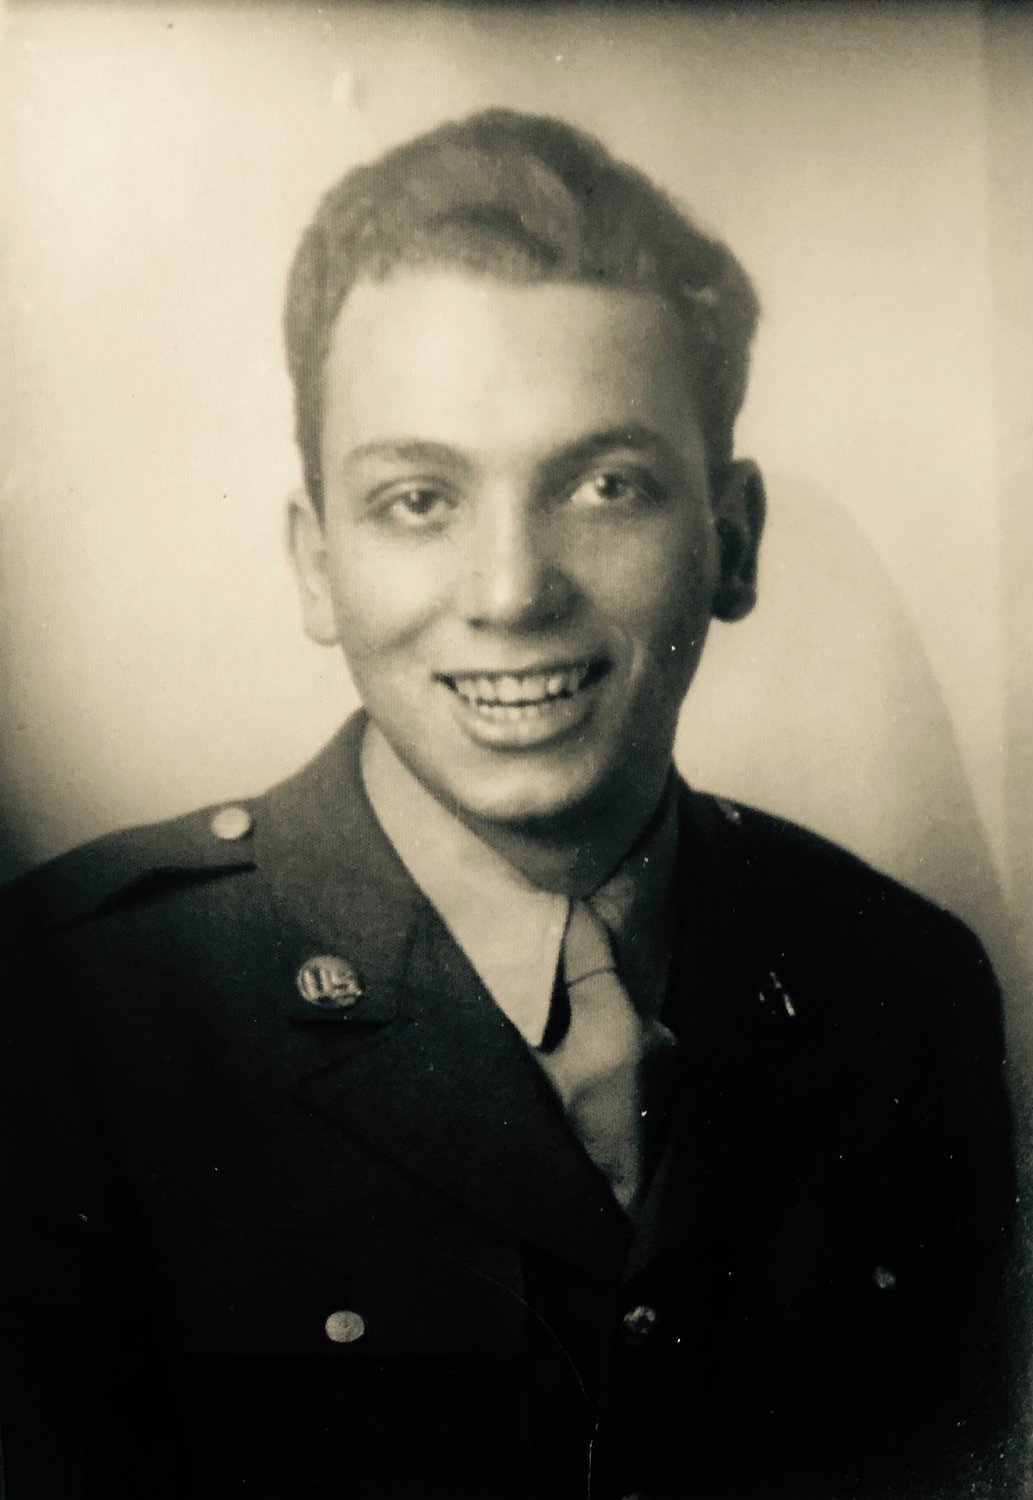 William Kellerman, an East Atlantic Beach resident, when he was a soldier in World War II.